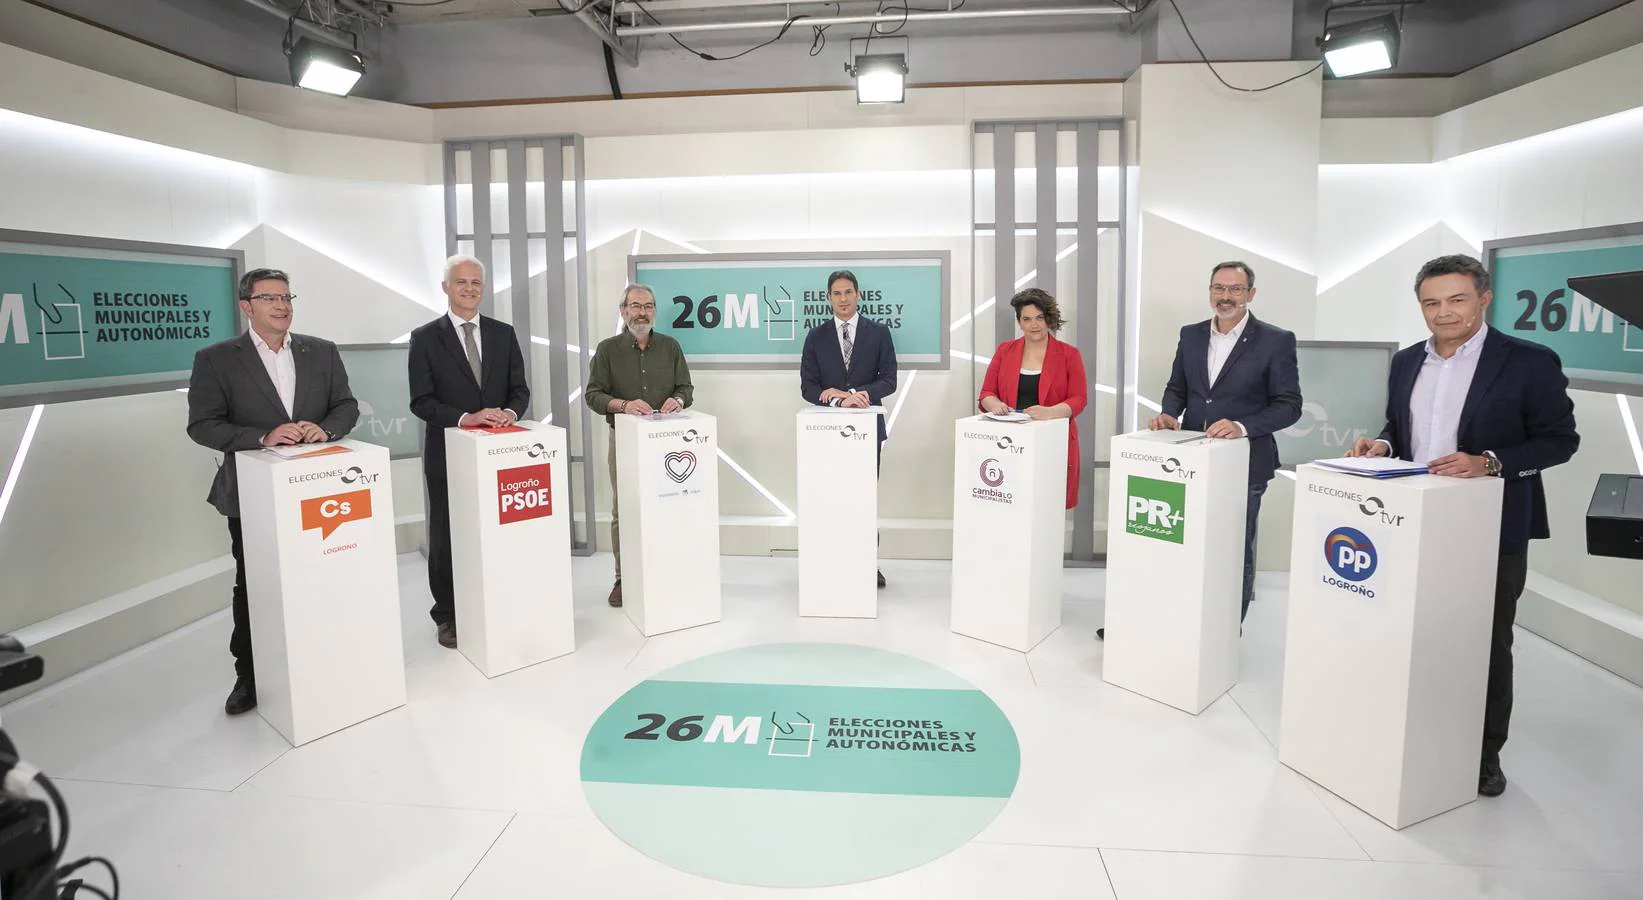 Fotos: La otra cara del debate de los candidatos a la Alcaldía de Logroño en TVR